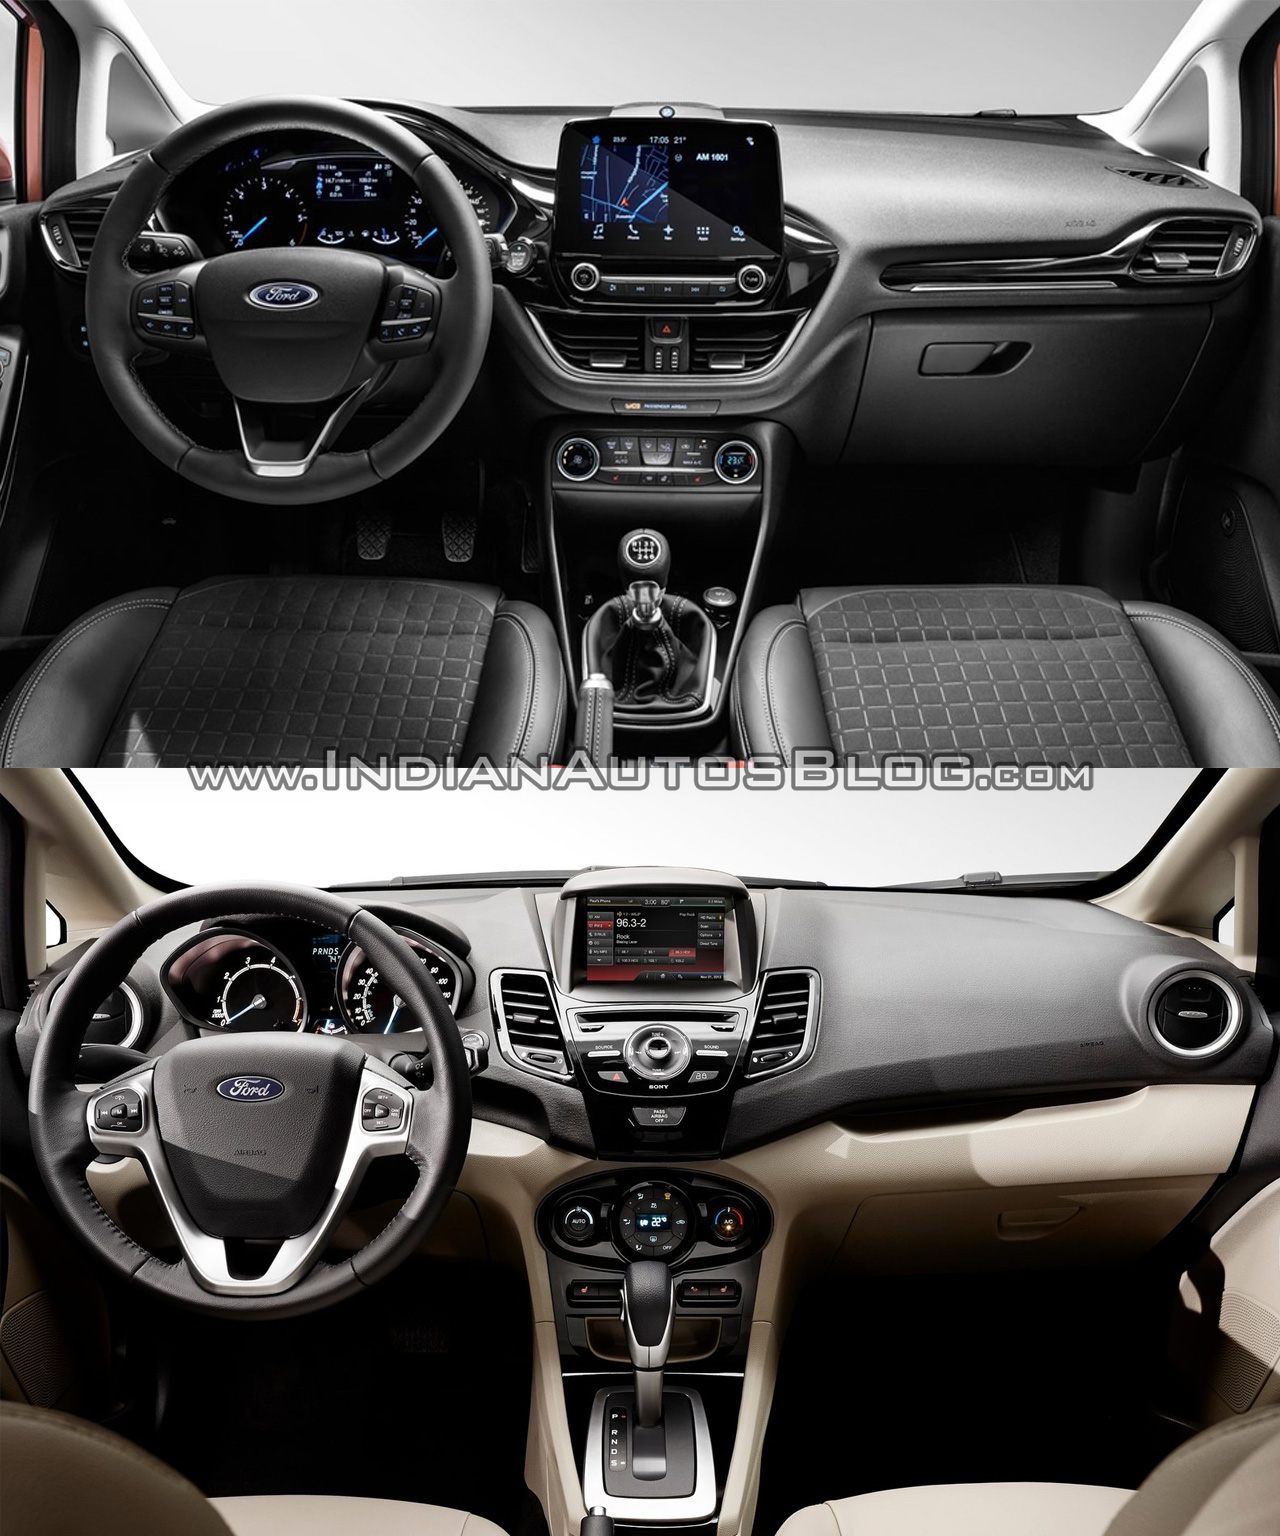 2017 Ford Fiesta vs 2013 Ford Fiesta interior Old vs New